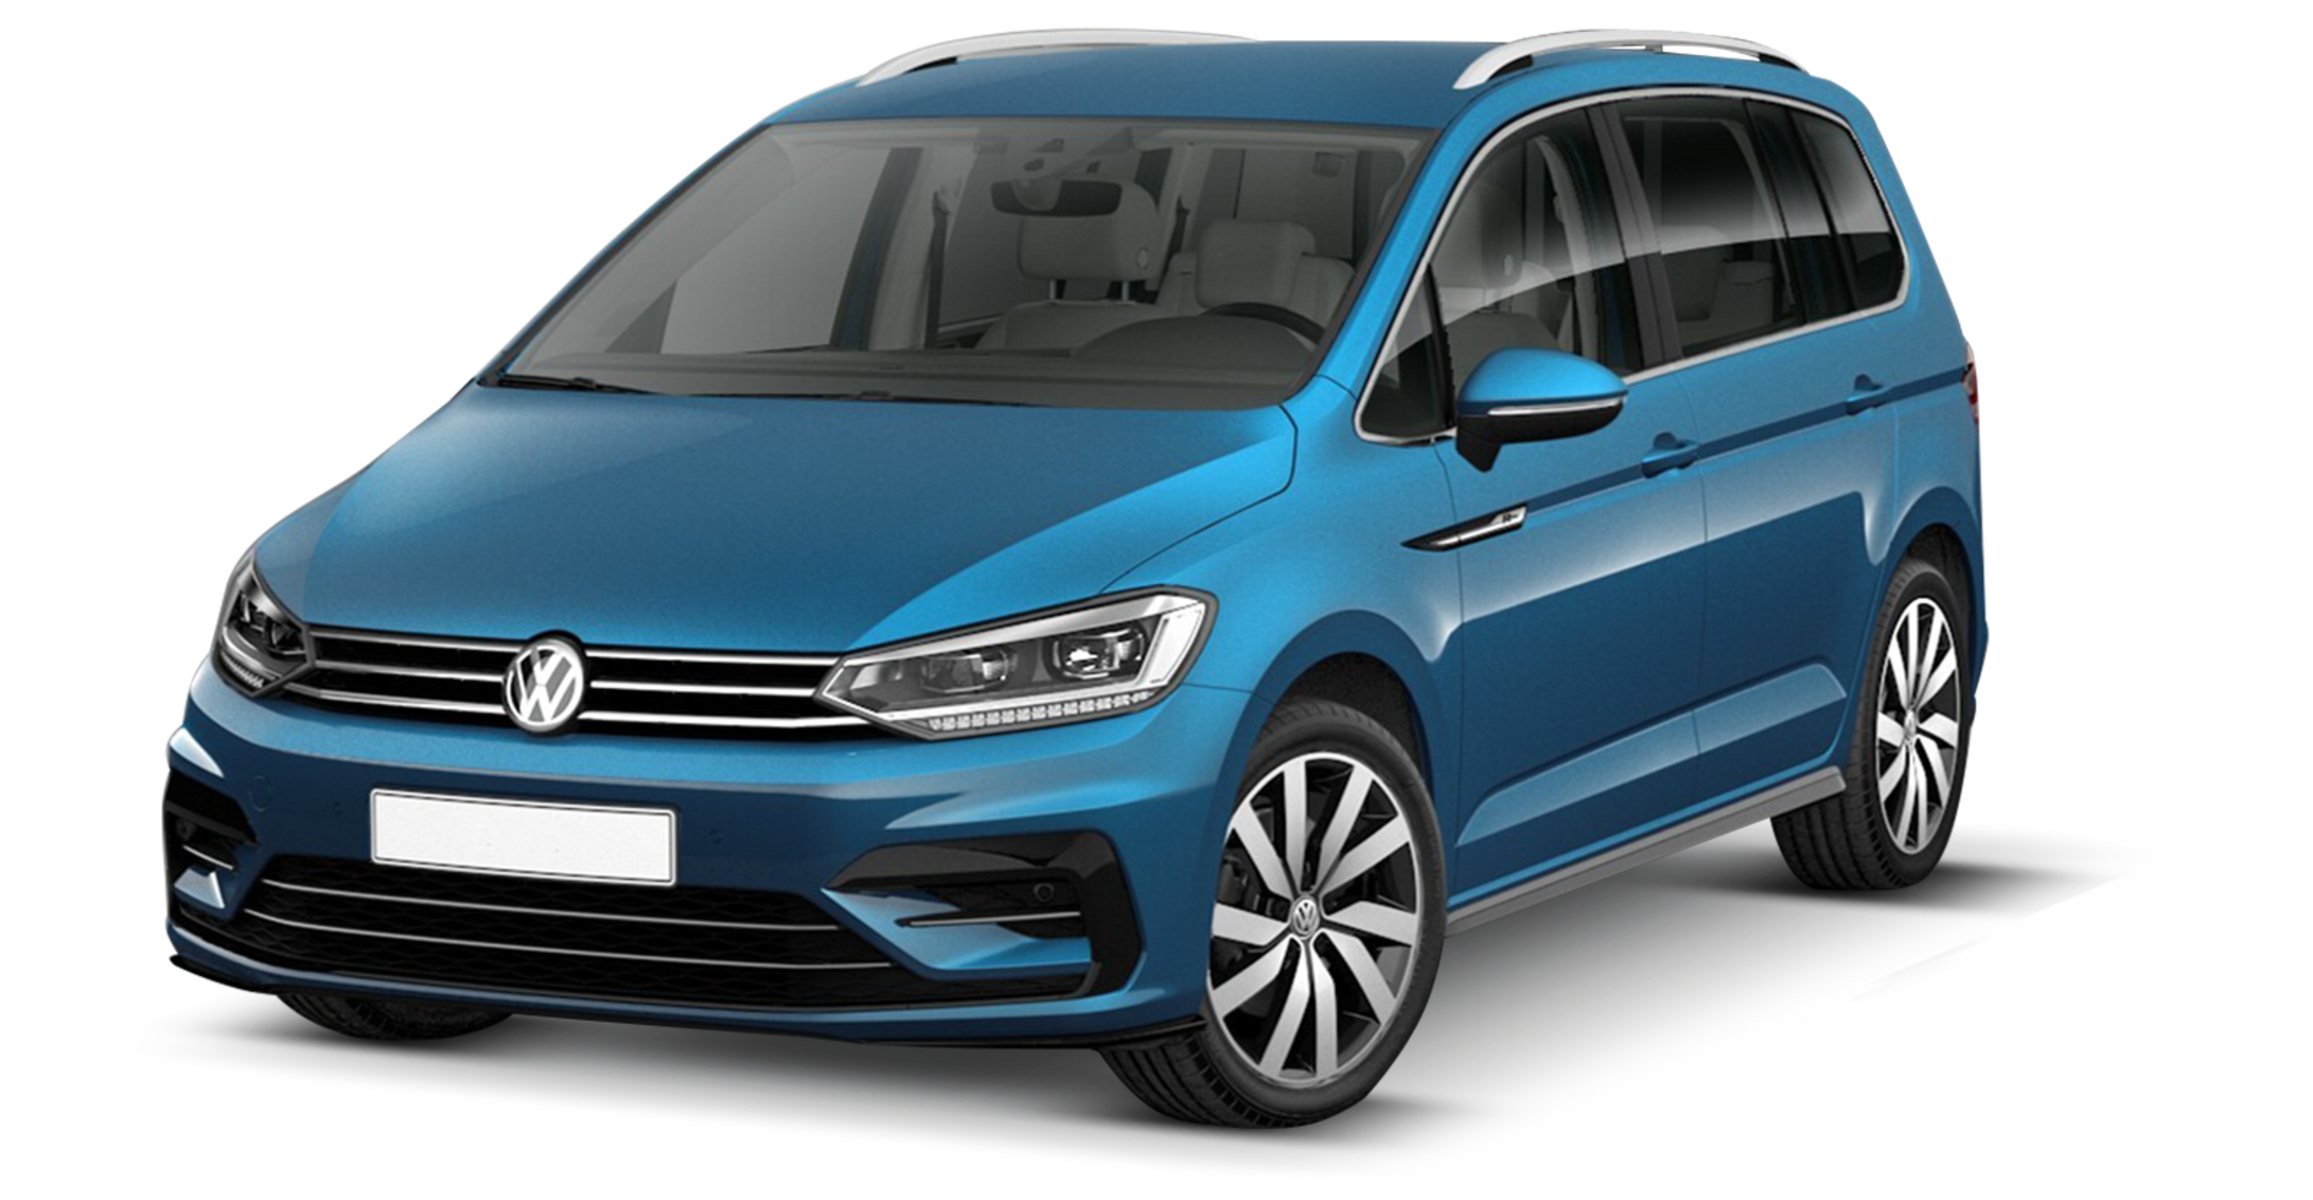 Listino Volkswagen Touran prezzo scheda tecnica